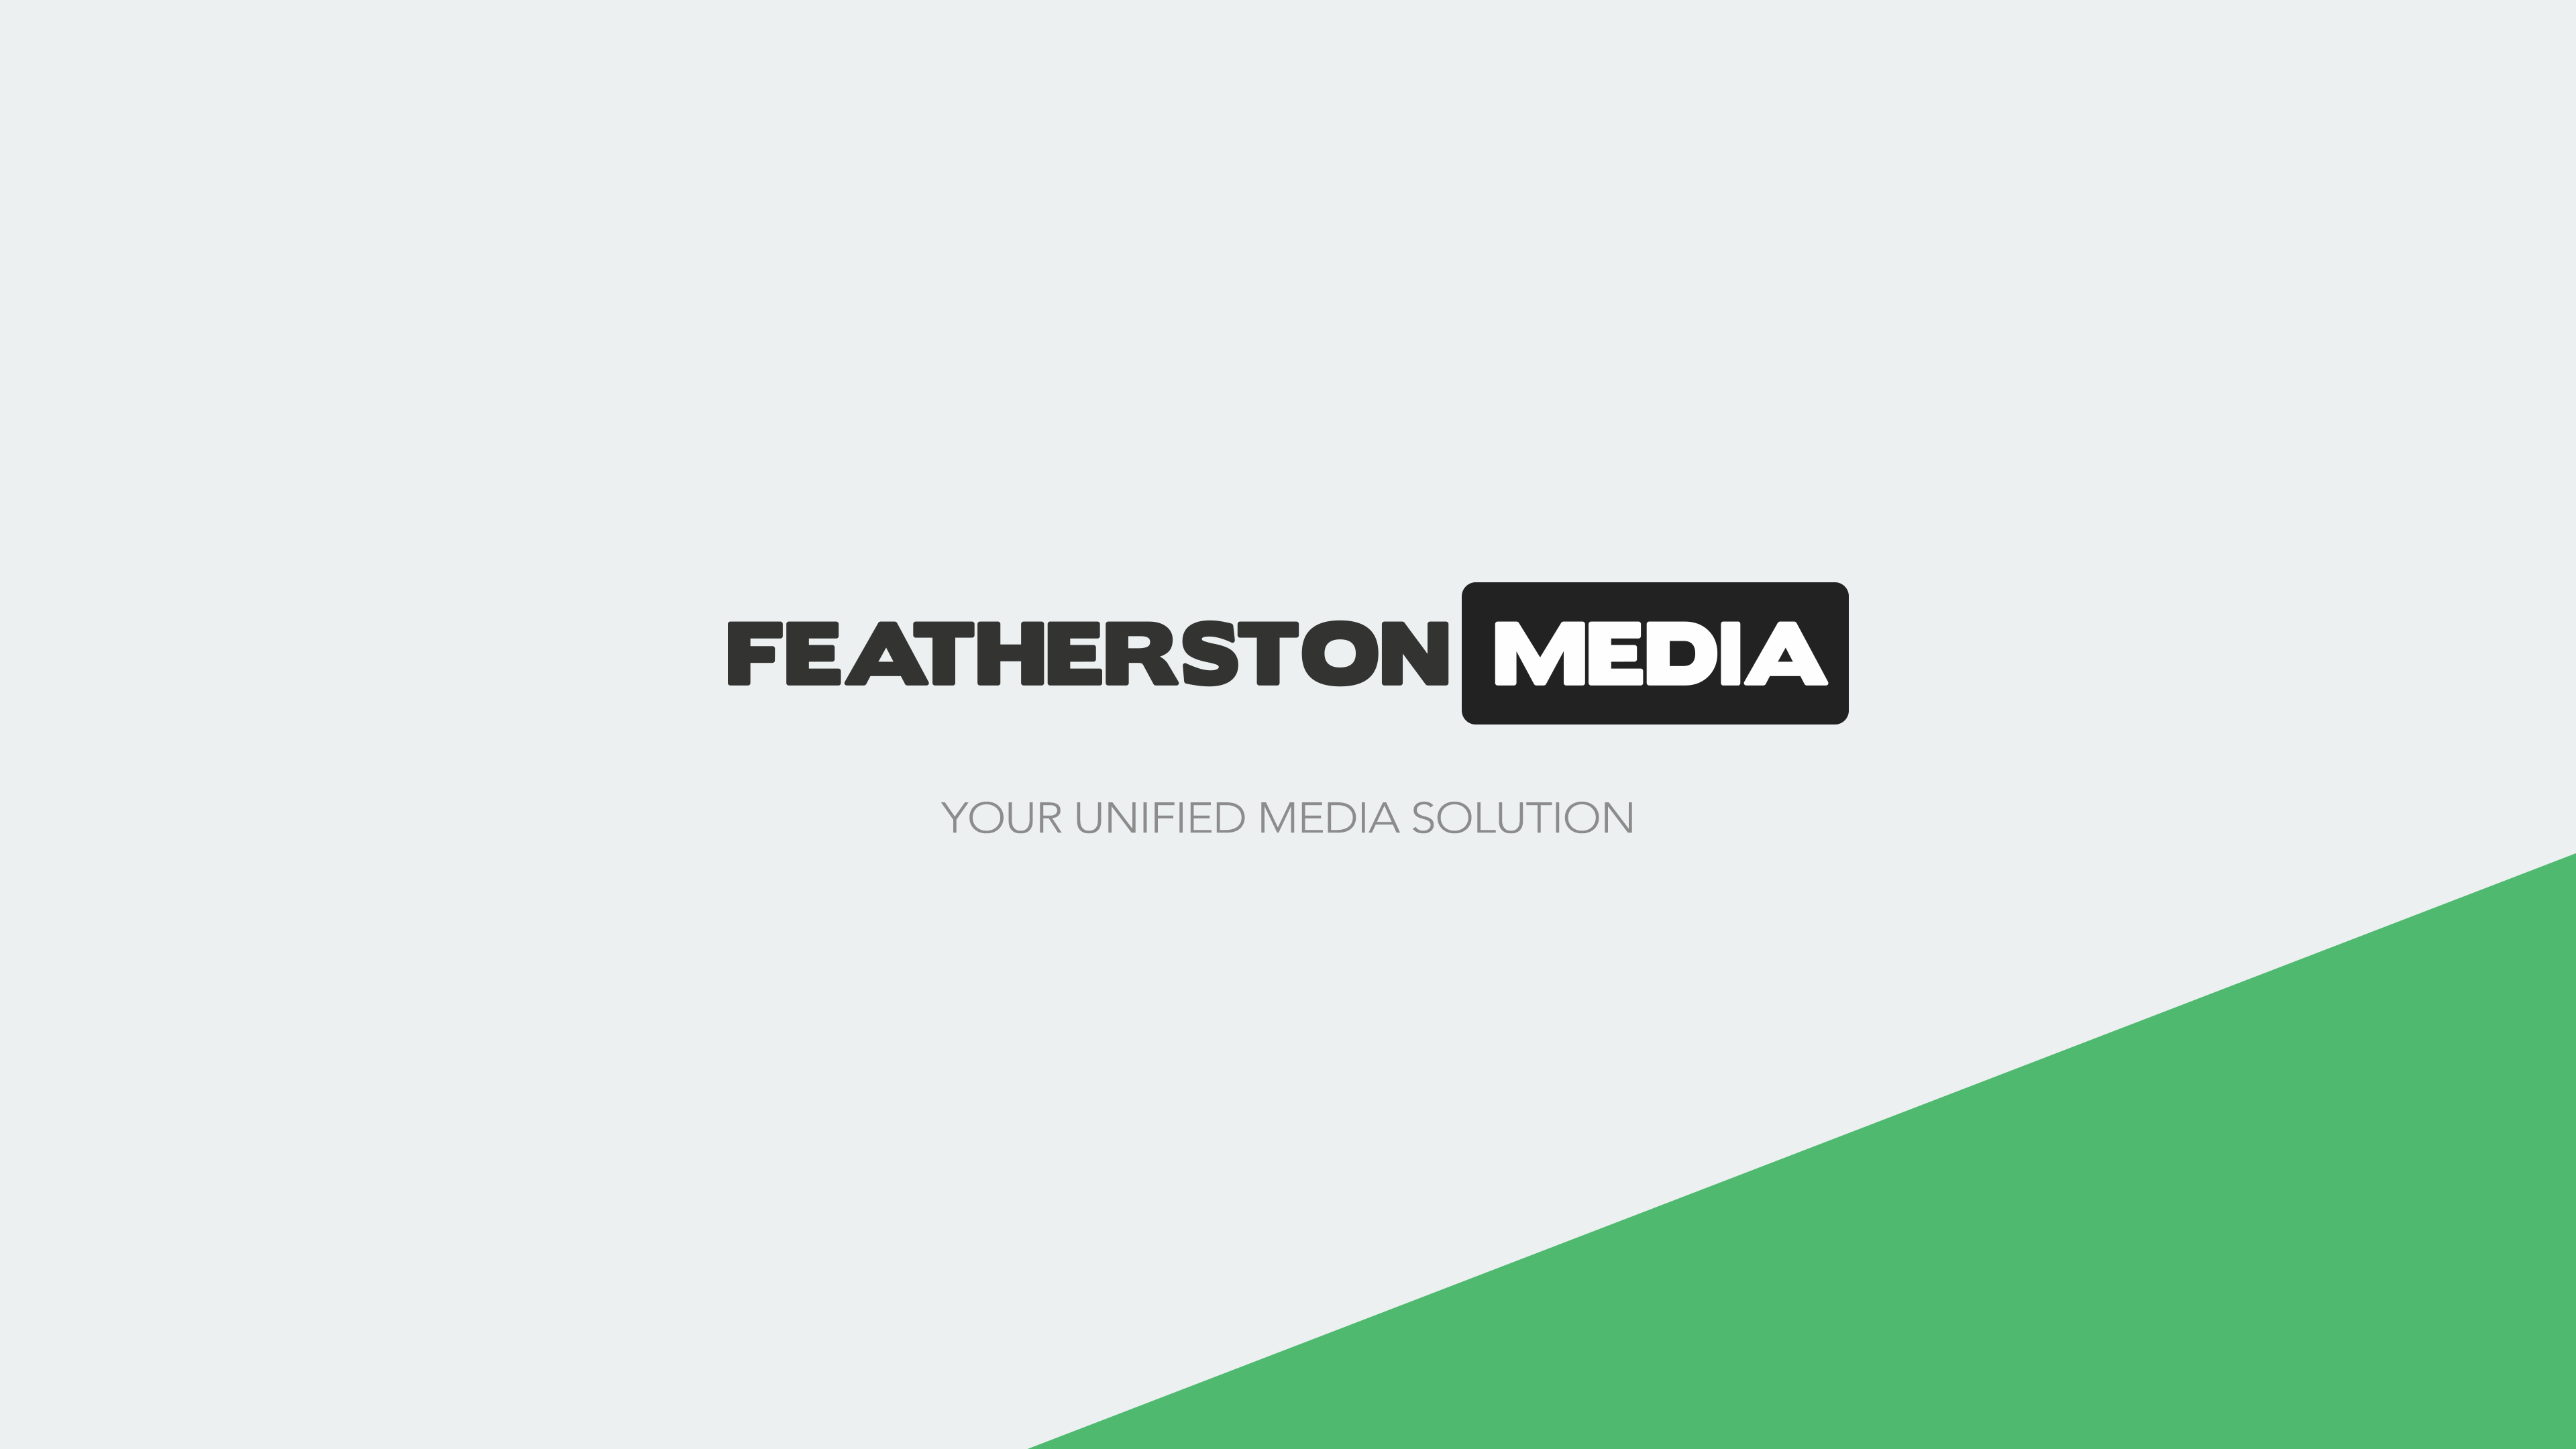 Featherston Media